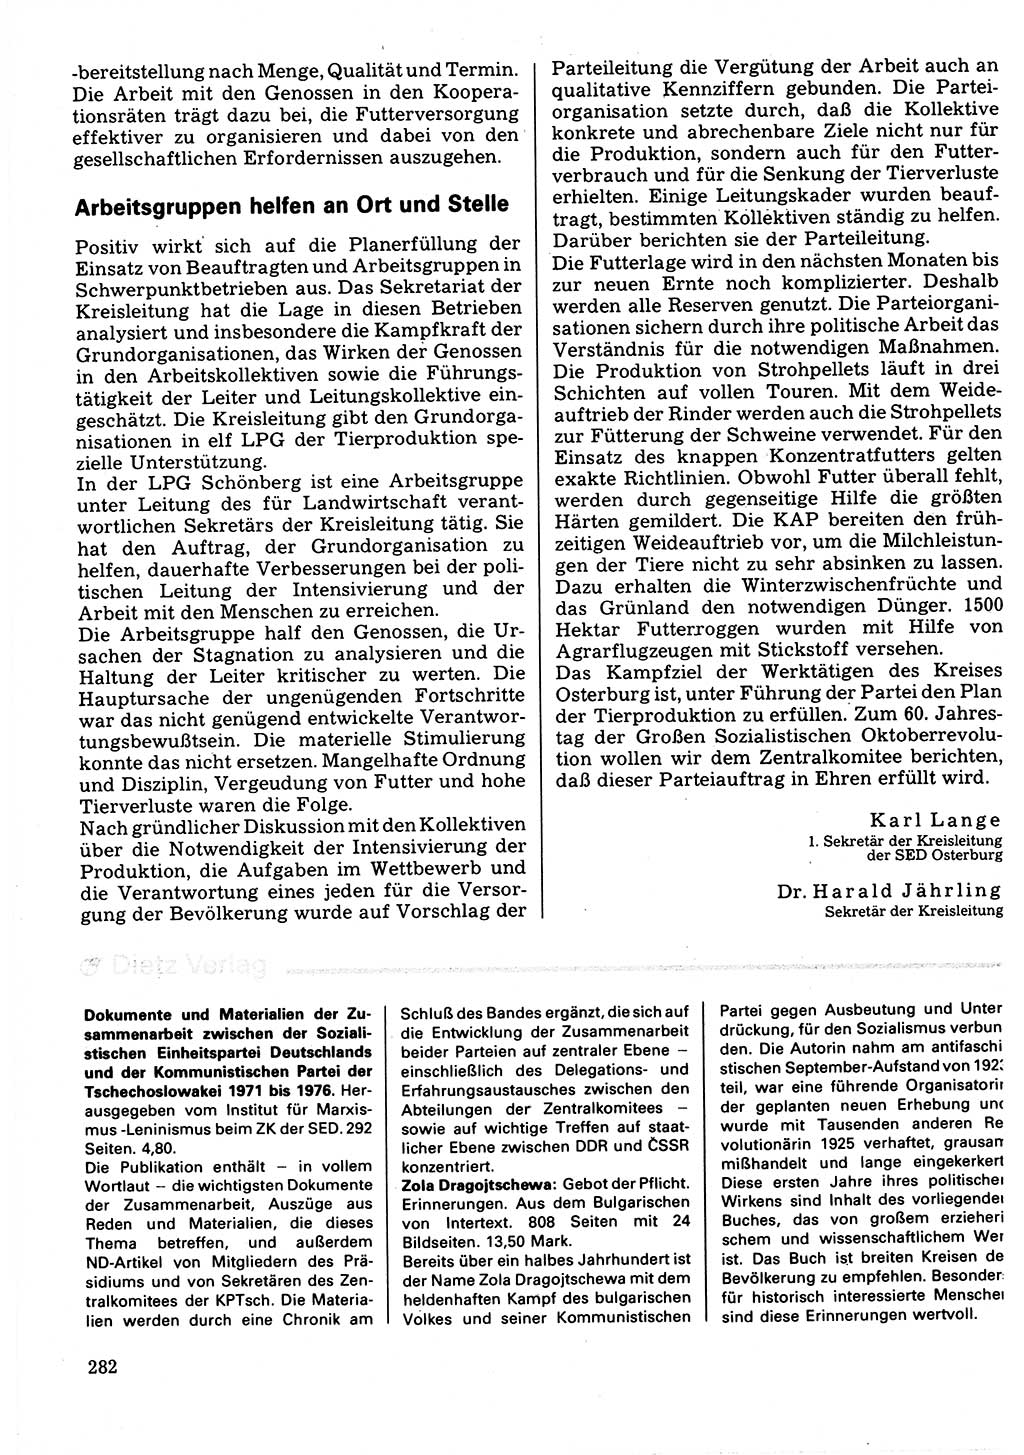 Neuer Weg (NW), Organ des Zentralkomitees (ZK) der SED (Sozialistische Einheitspartei Deutschlands) für Fragen des Parteilebens, 32. Jahrgang [Deutsche Demokratische Republik (DDR)] 1977, Seite 282 (NW ZK SED DDR 1977, S. 282)